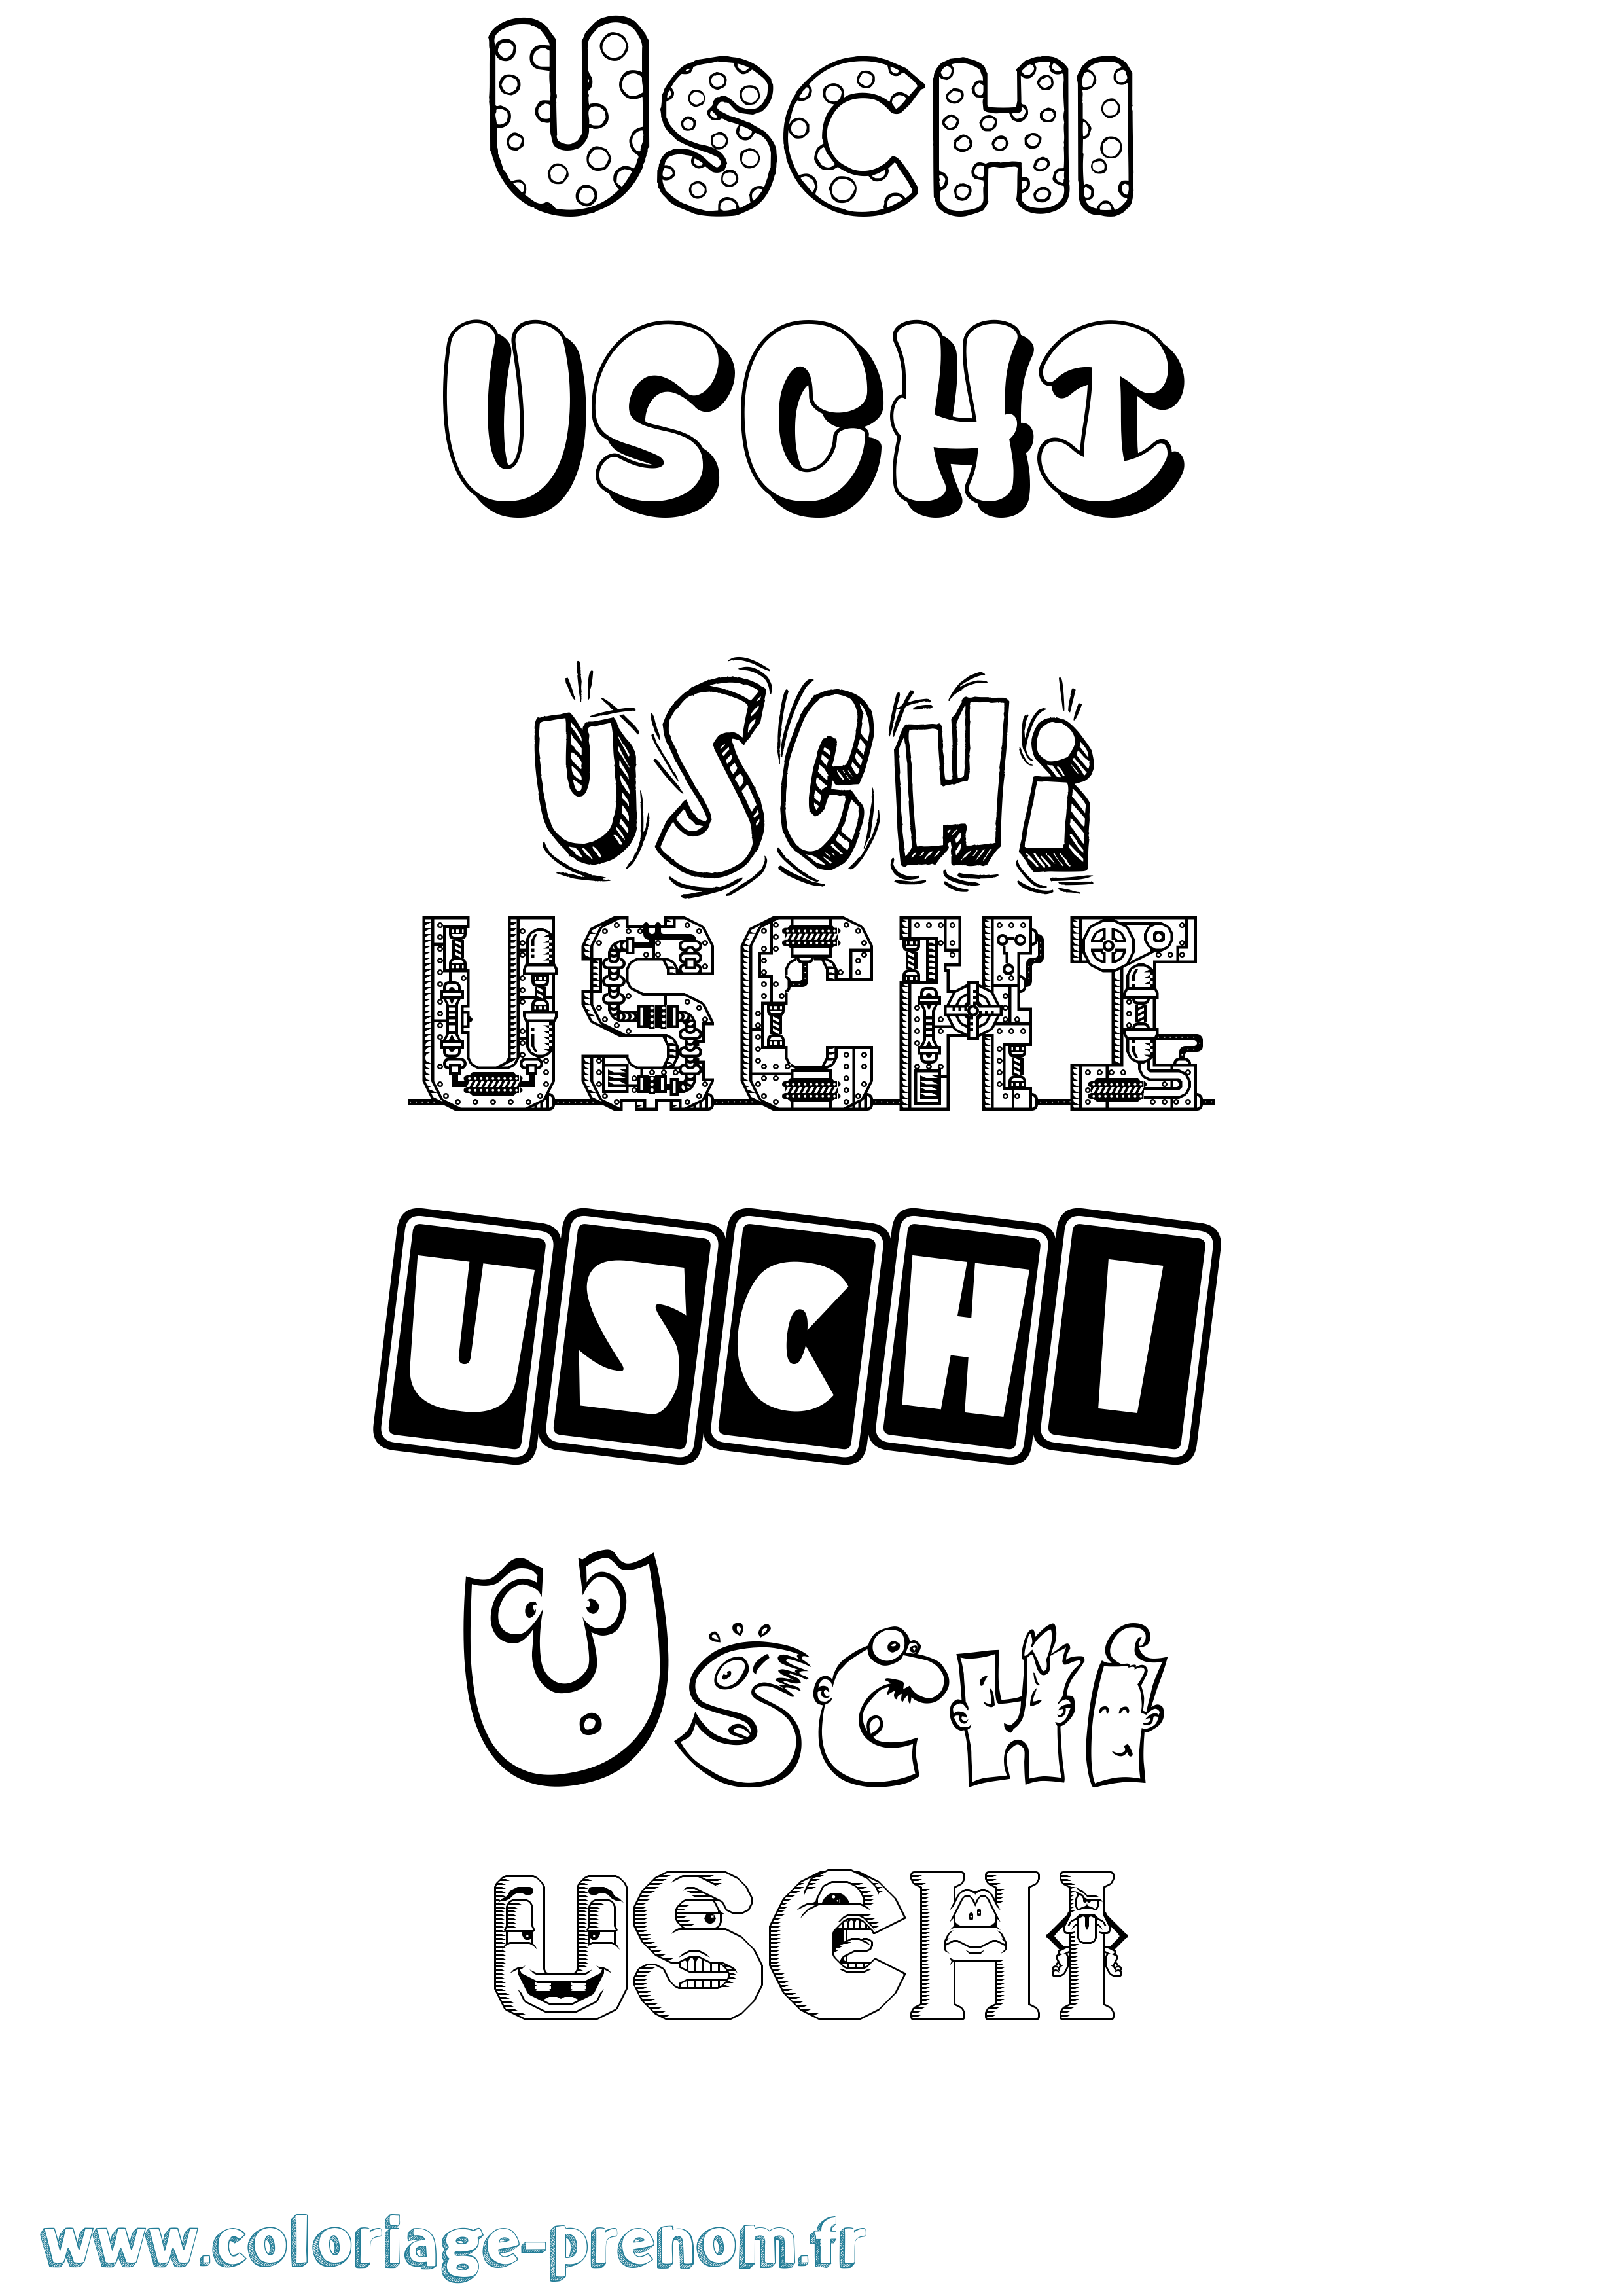 Coloriage prénom Uschi Fun